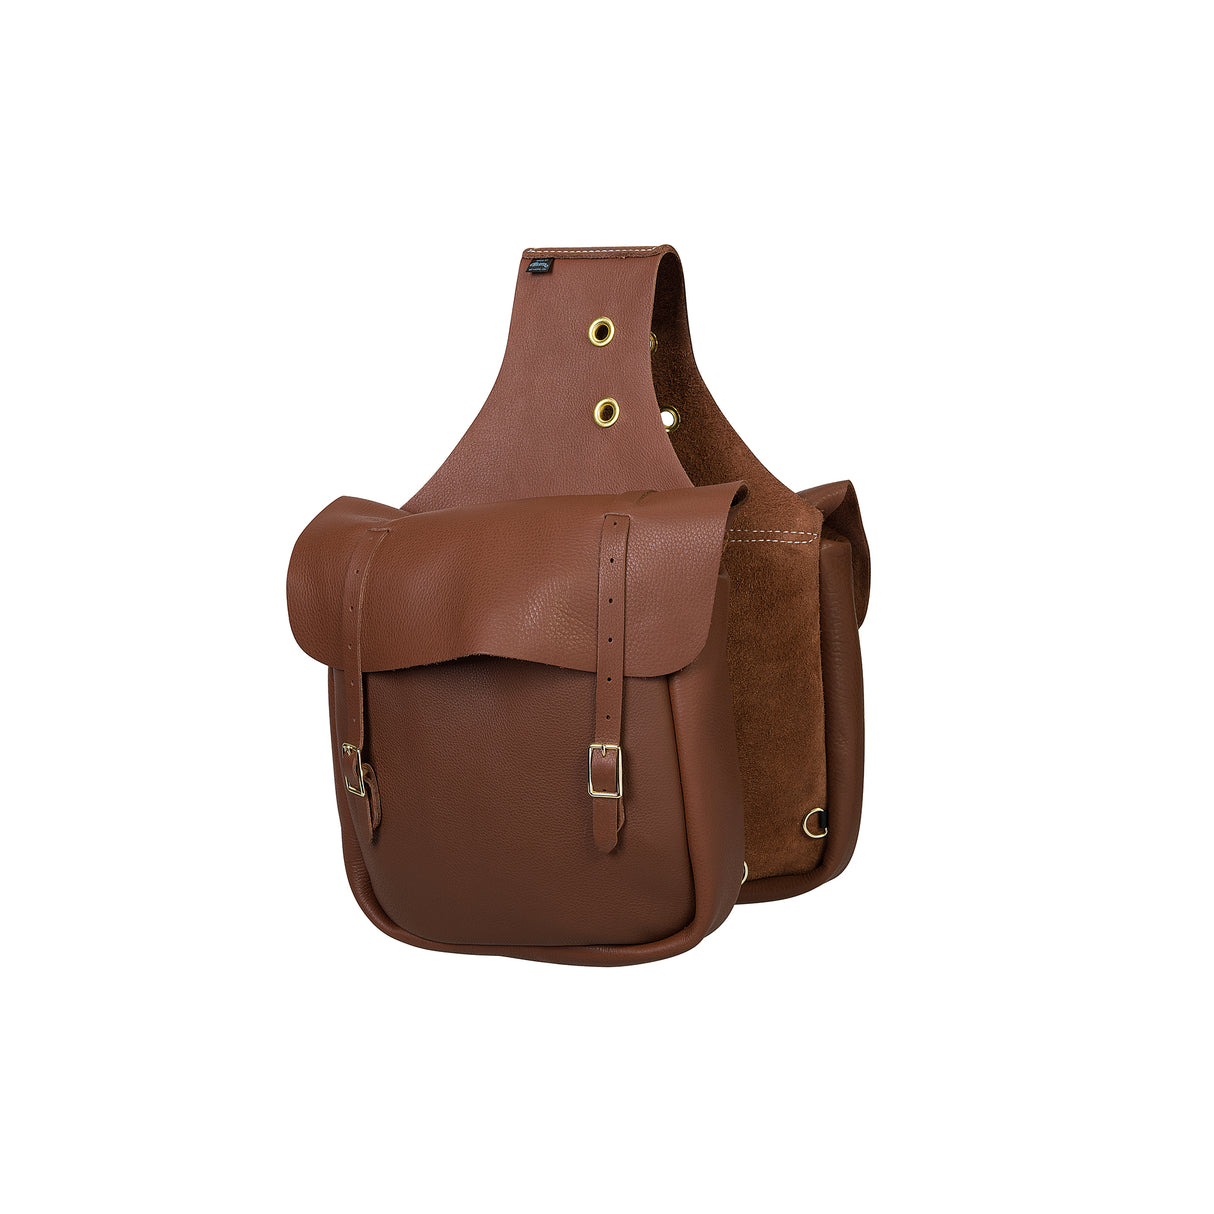 Chap Leather Saddle Bag, Brown